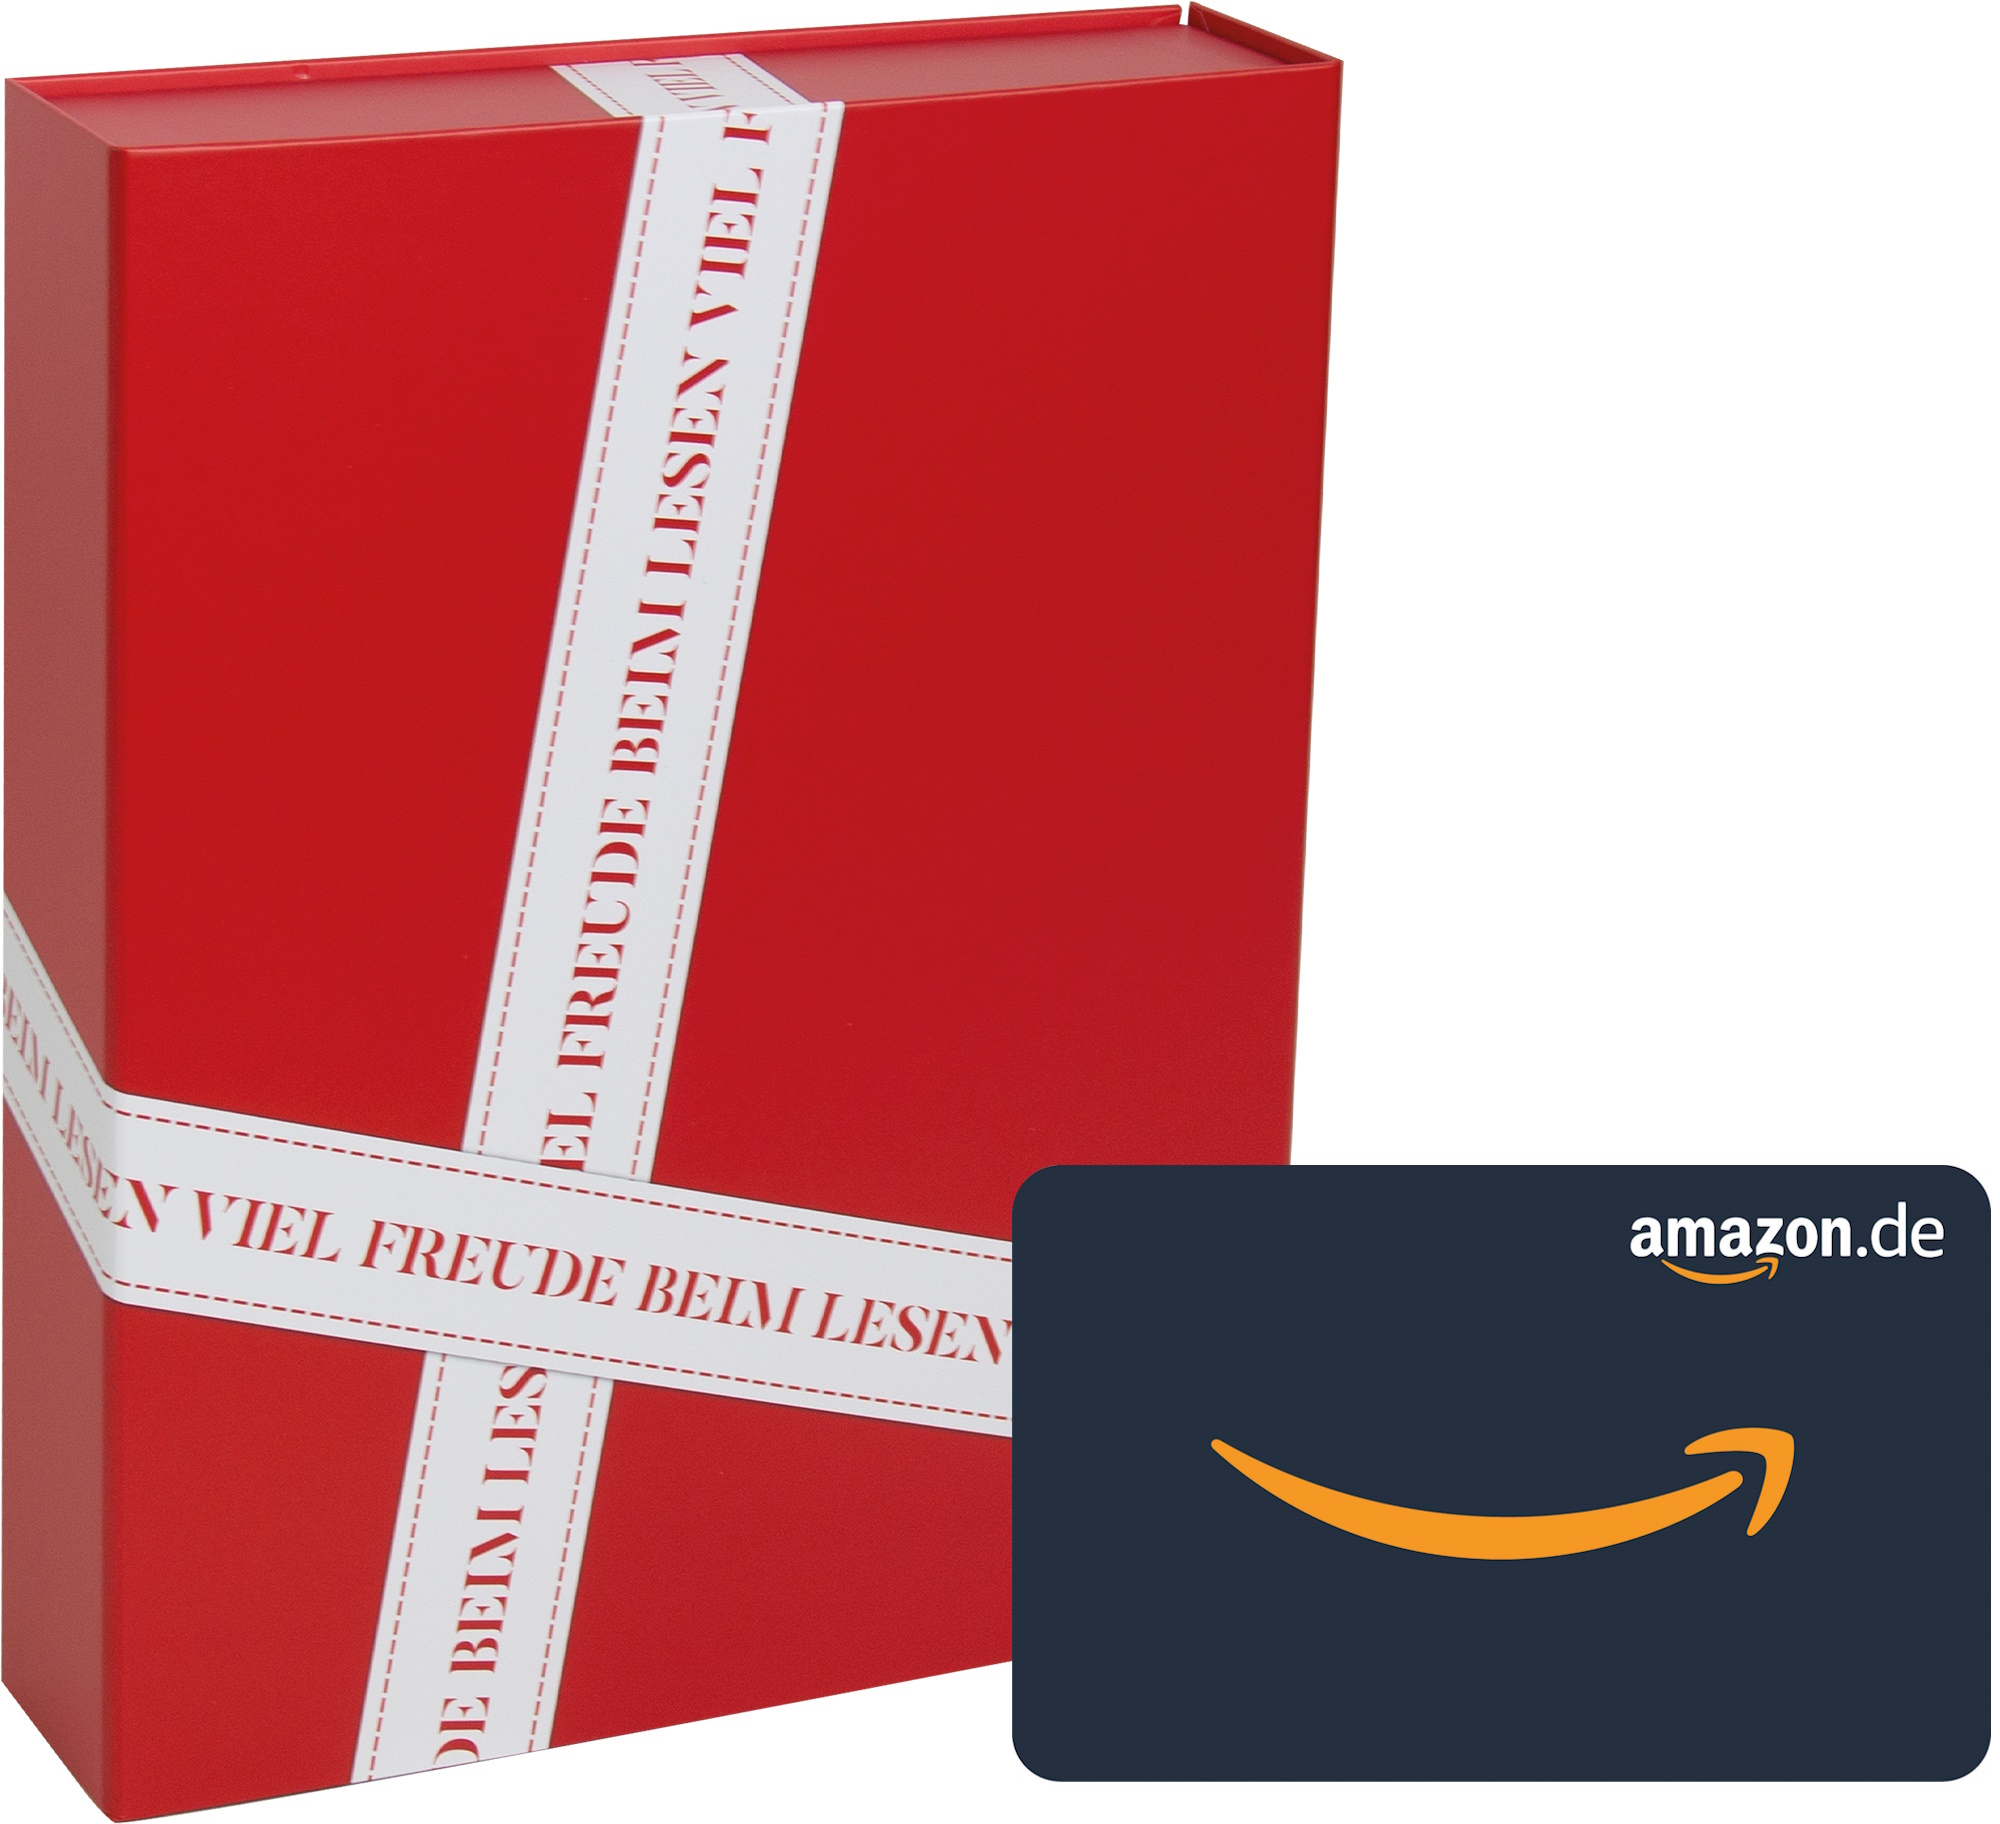 Geschenkbox + Amazon.de-Gutschein